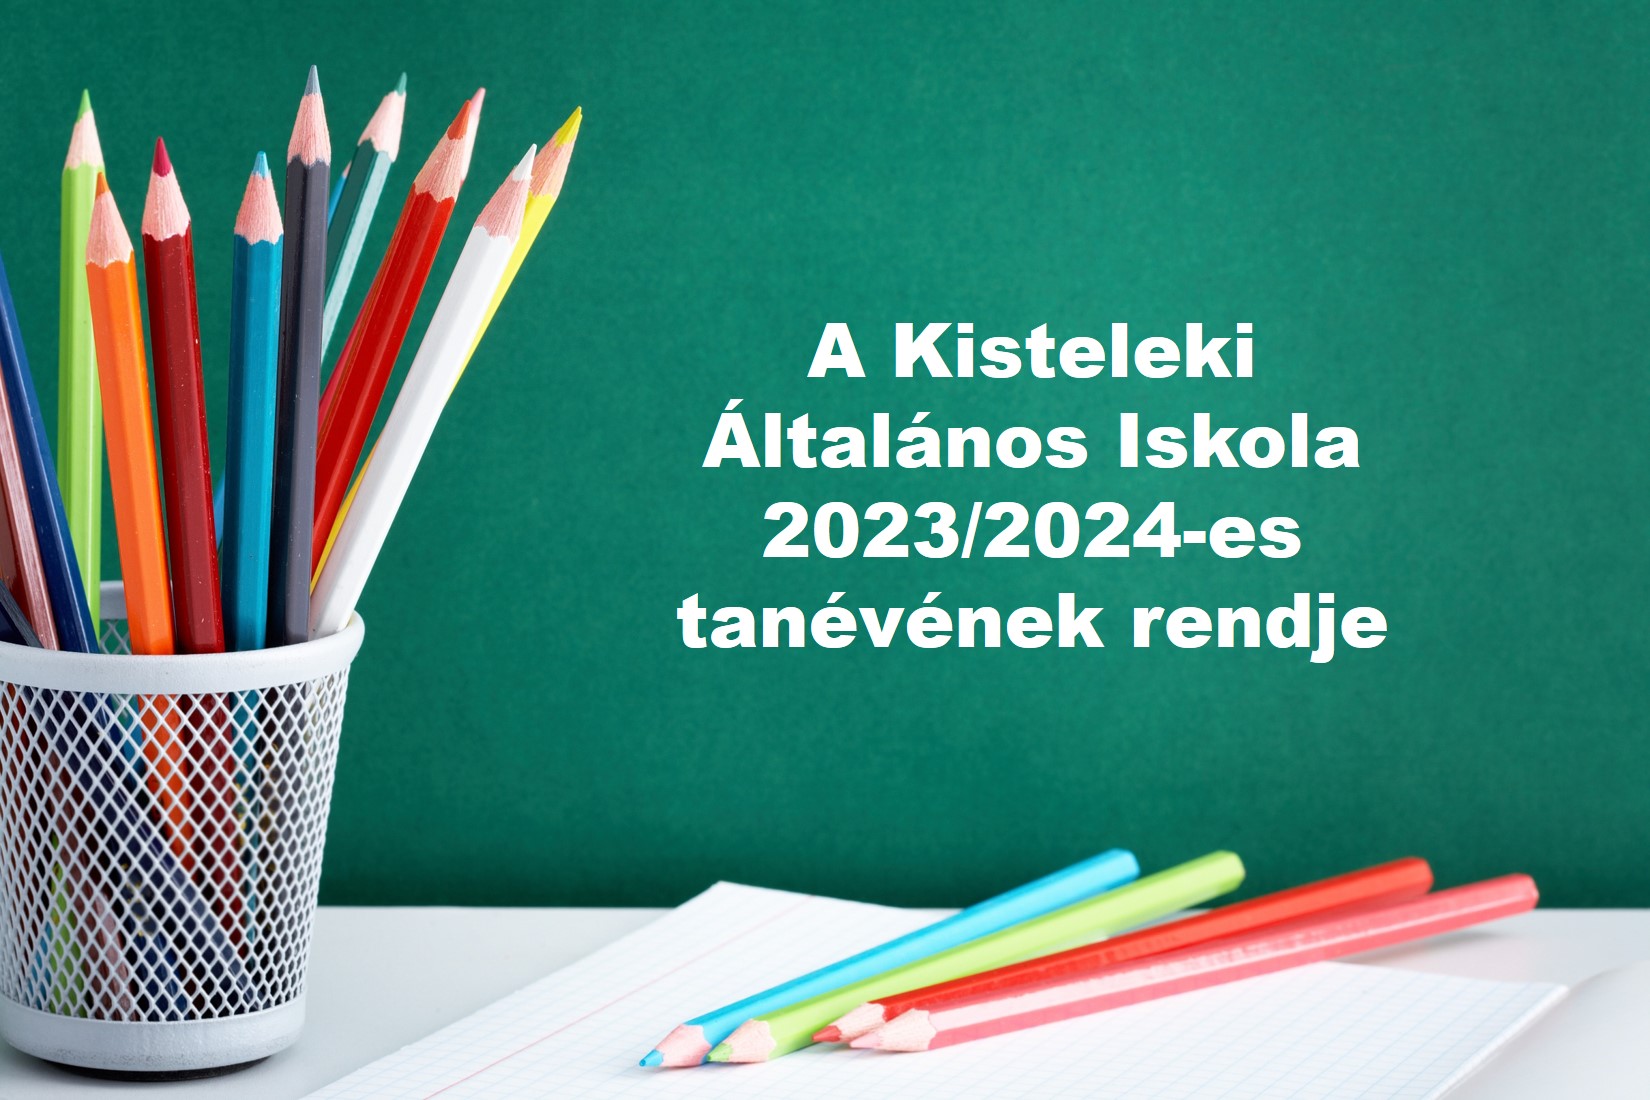 A Kisteleki Általános Iskola 2023/2024-es tanévének rendje